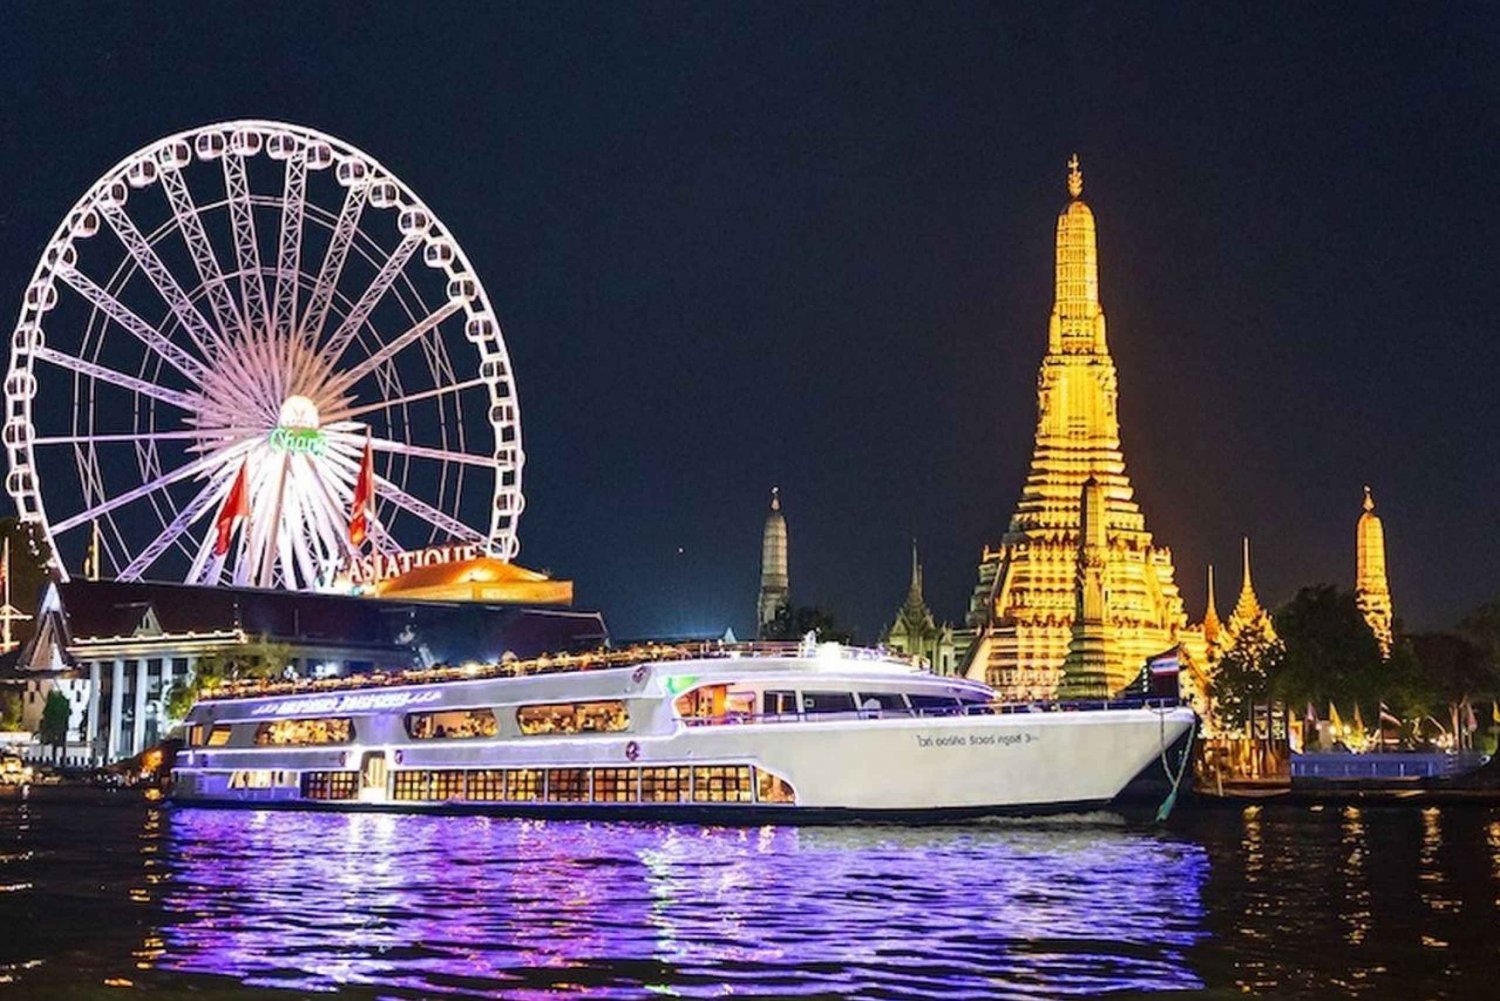 Bangkok: White Orchid Chao Phraya Cena en Crucero Cerveza gratis